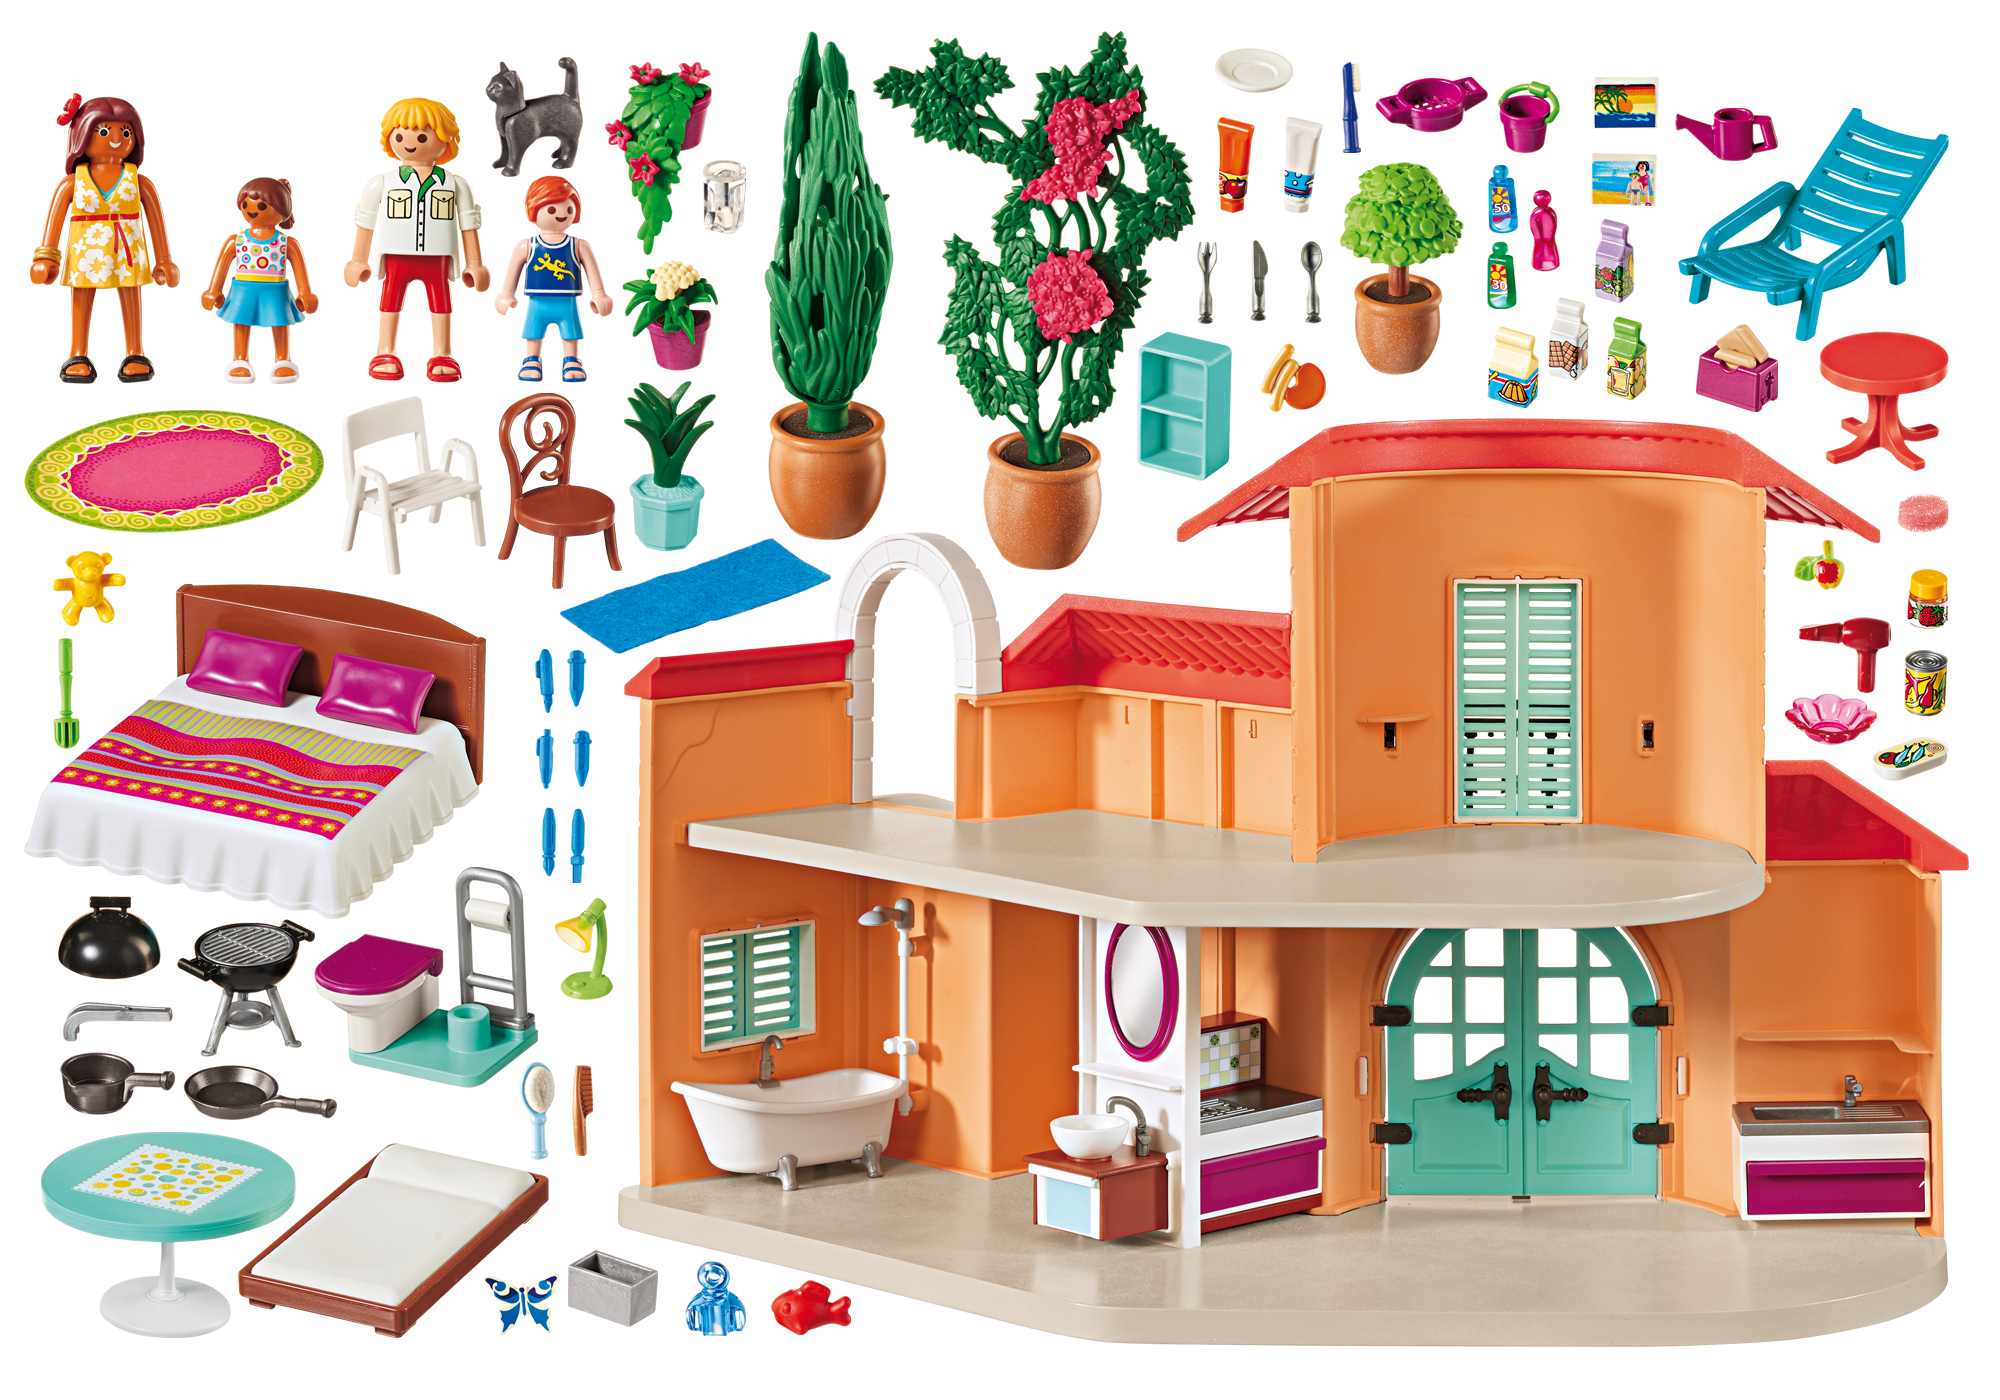 villa de playmobil